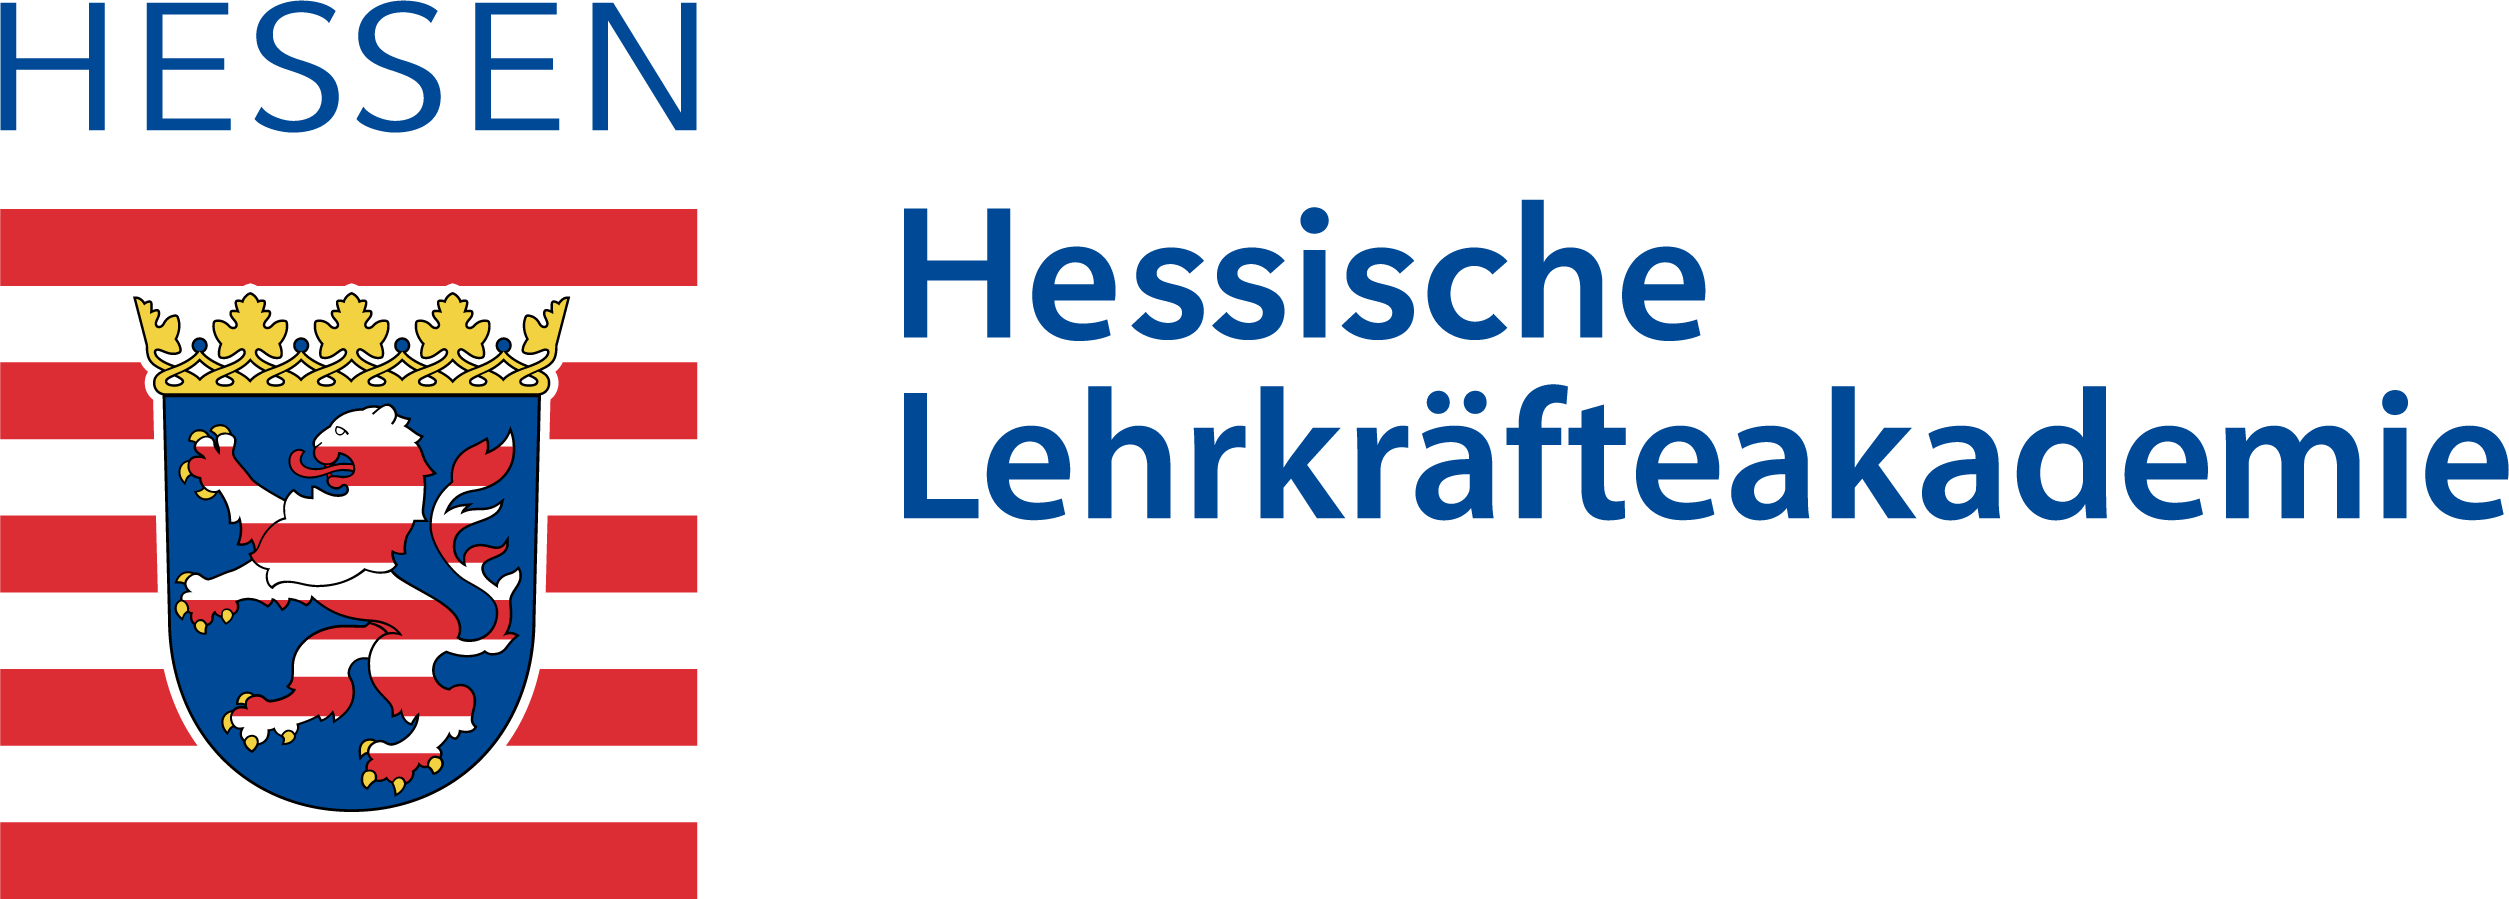 Logo Landeswappen Hessen und Text Hessische Lehrkräfteakademie